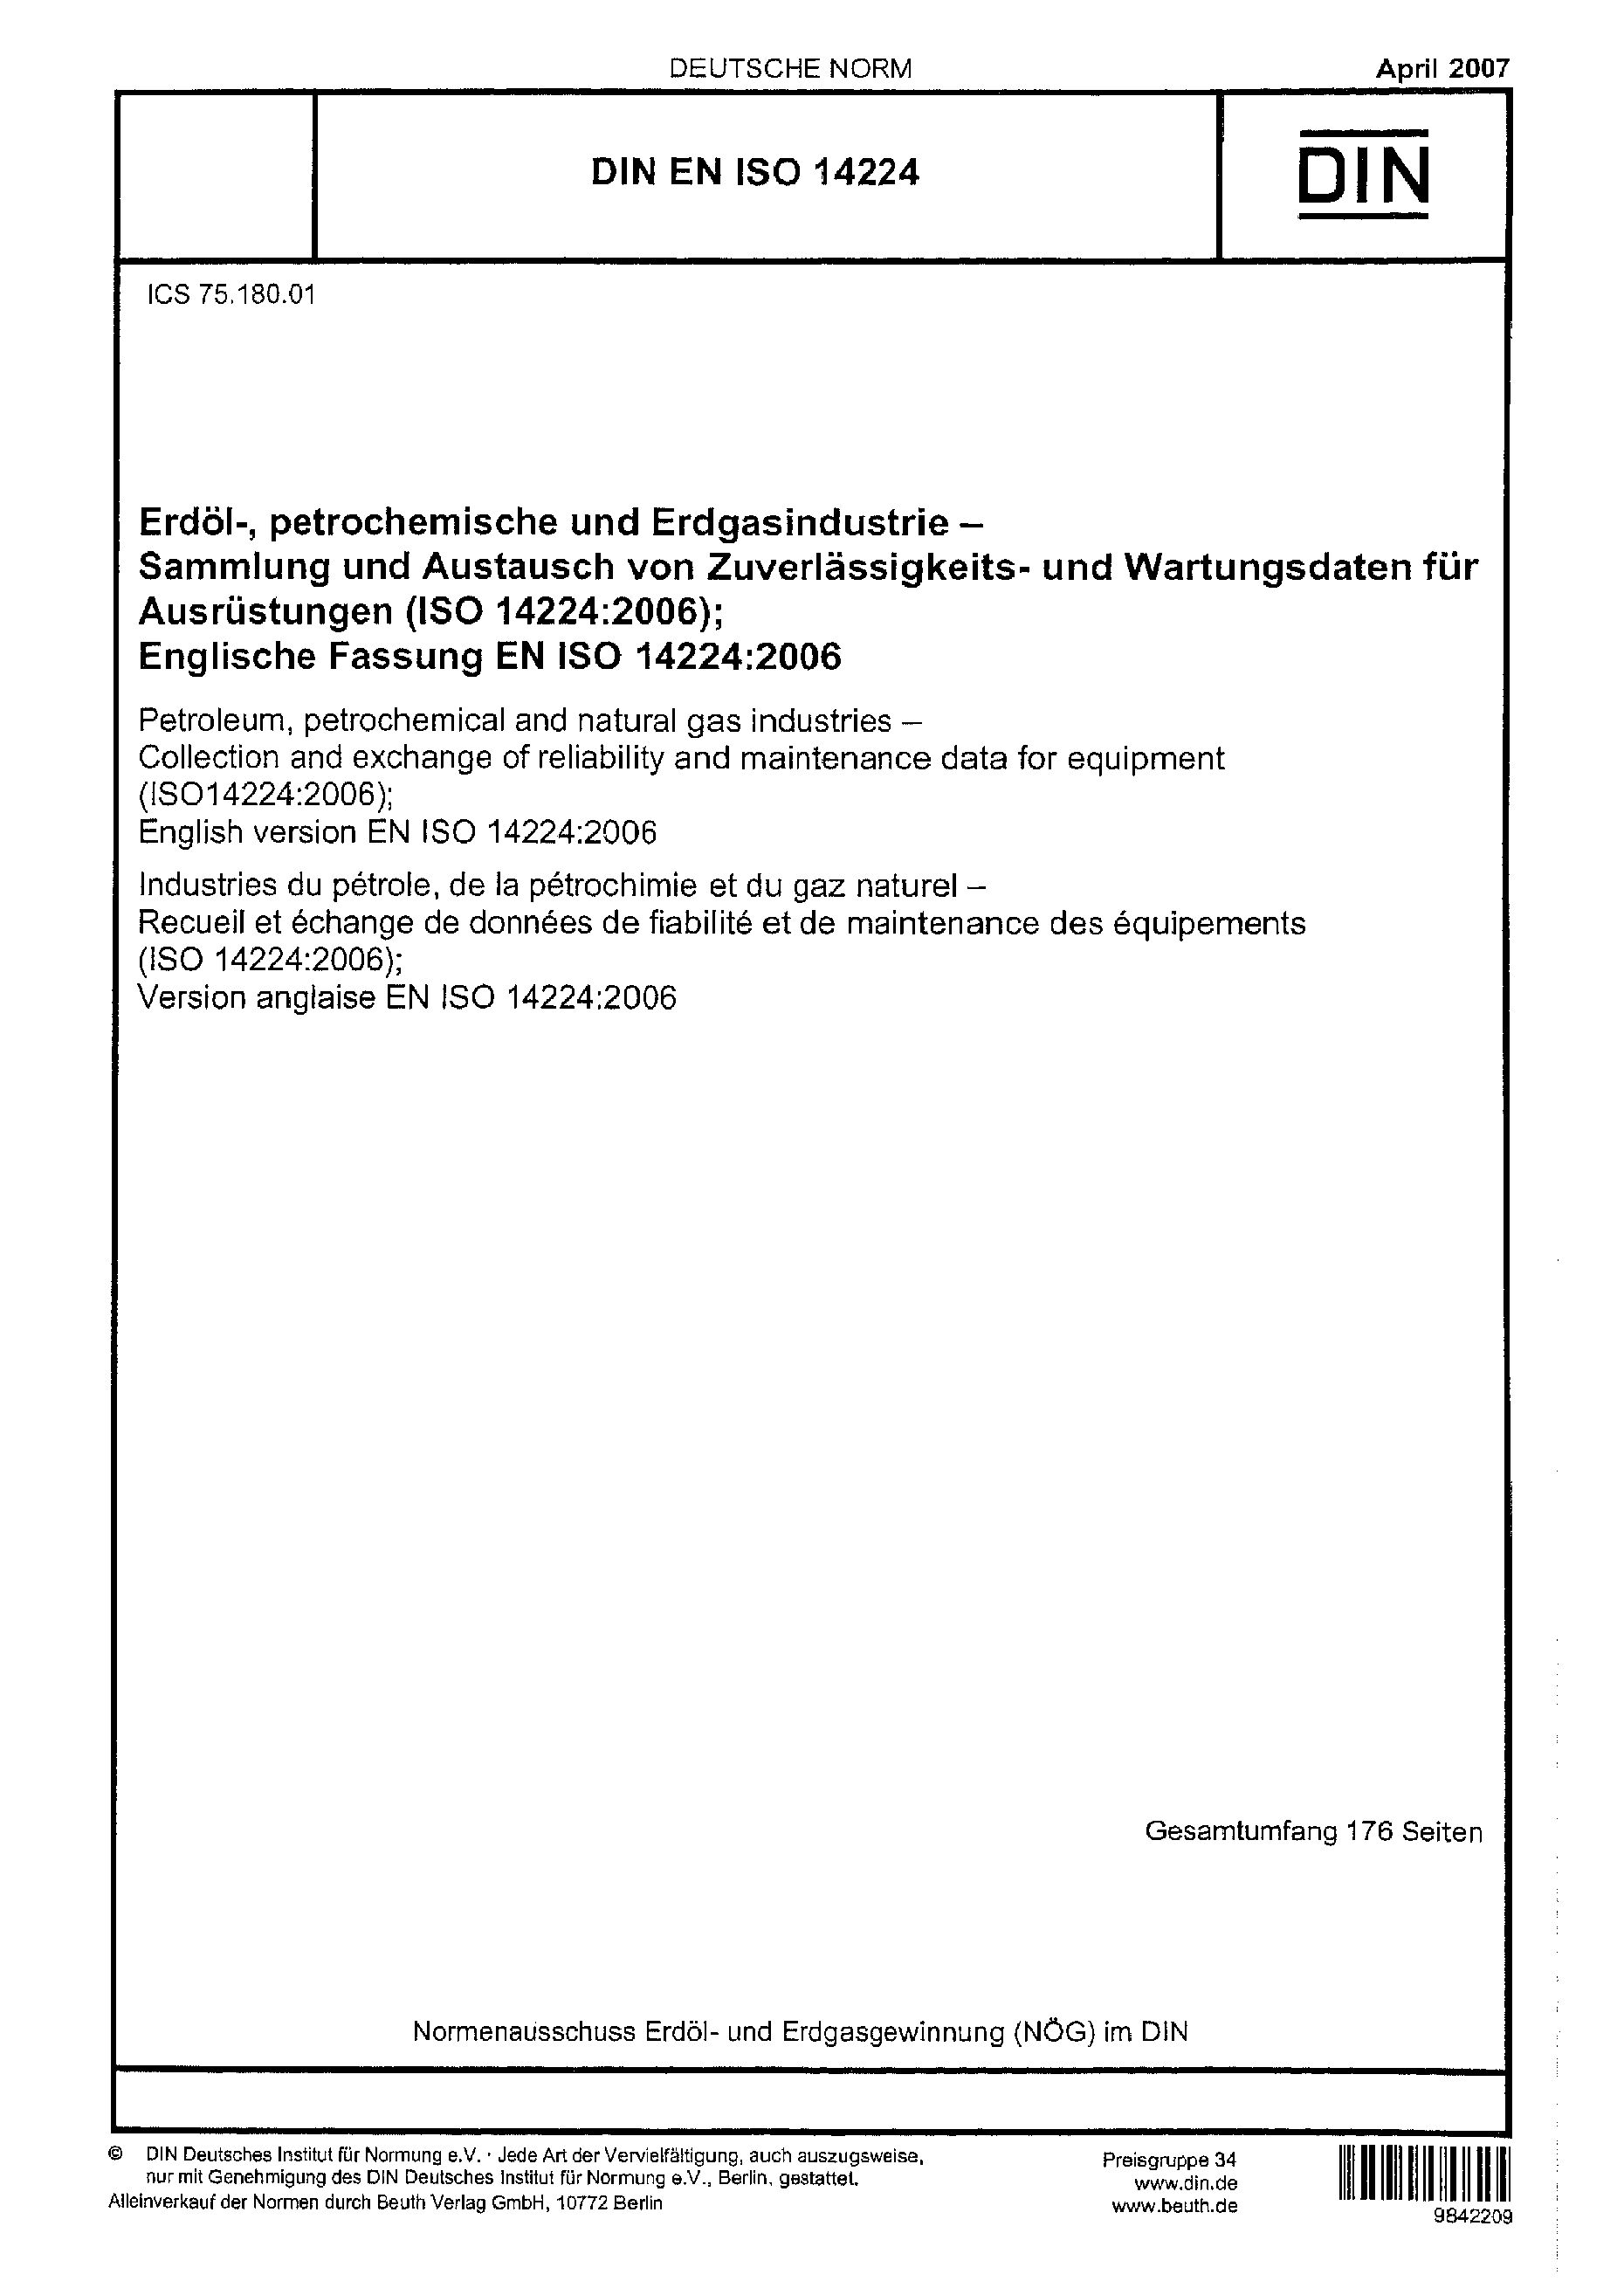 DIN EN ISO 14224:2007封面图